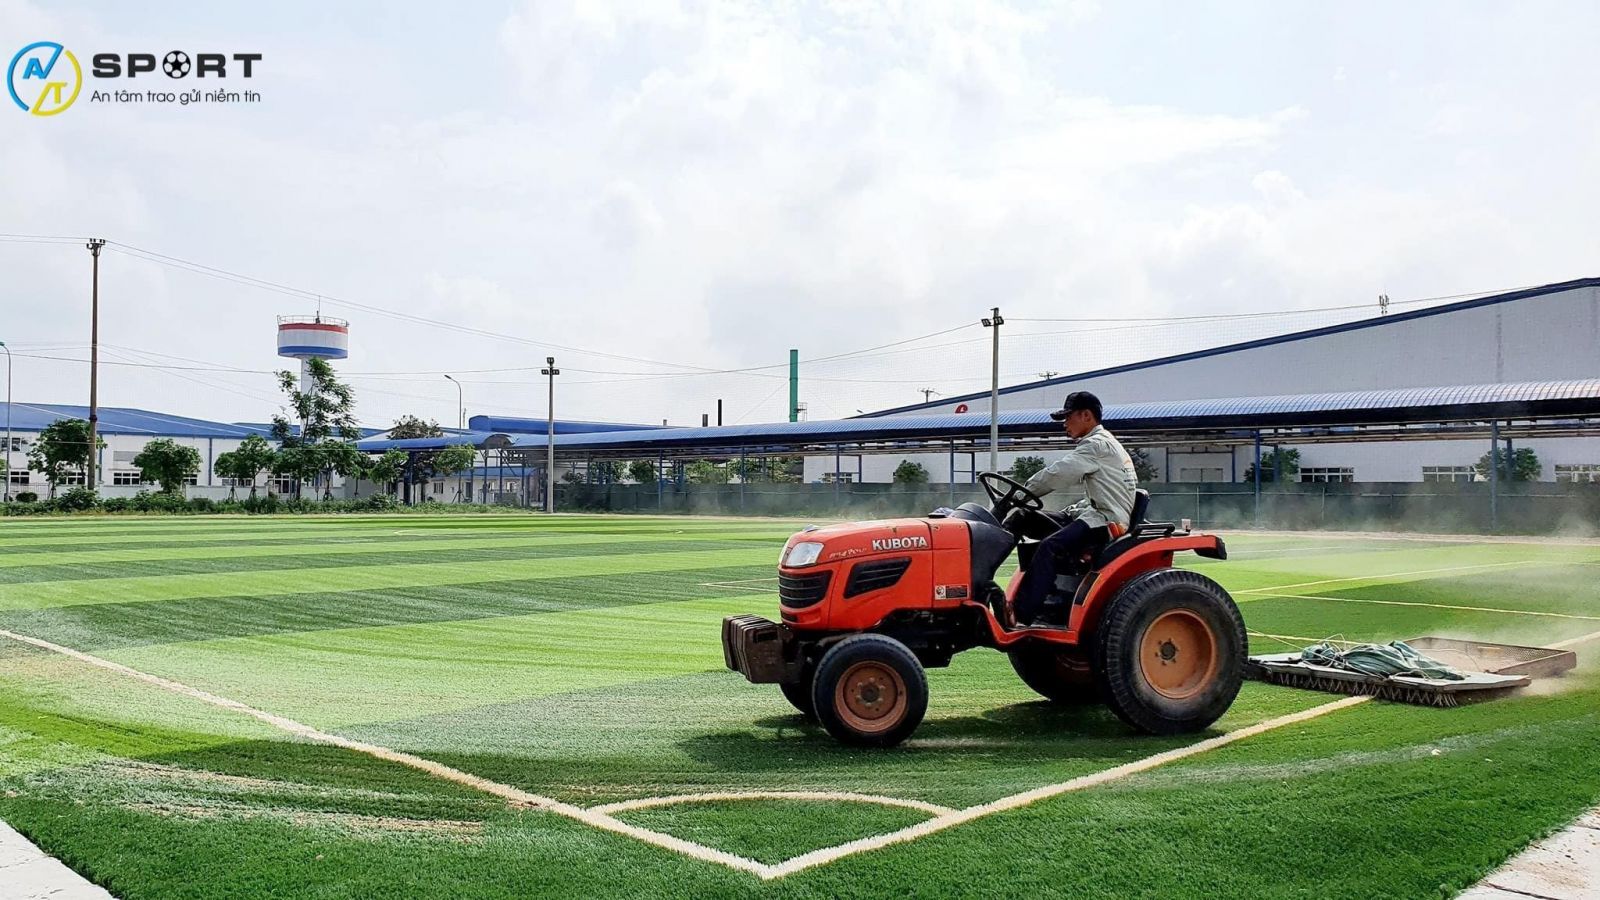 Thi công cỏ nhân tạo sân bóng đá tại Mỹ Tho, Tiền Giang